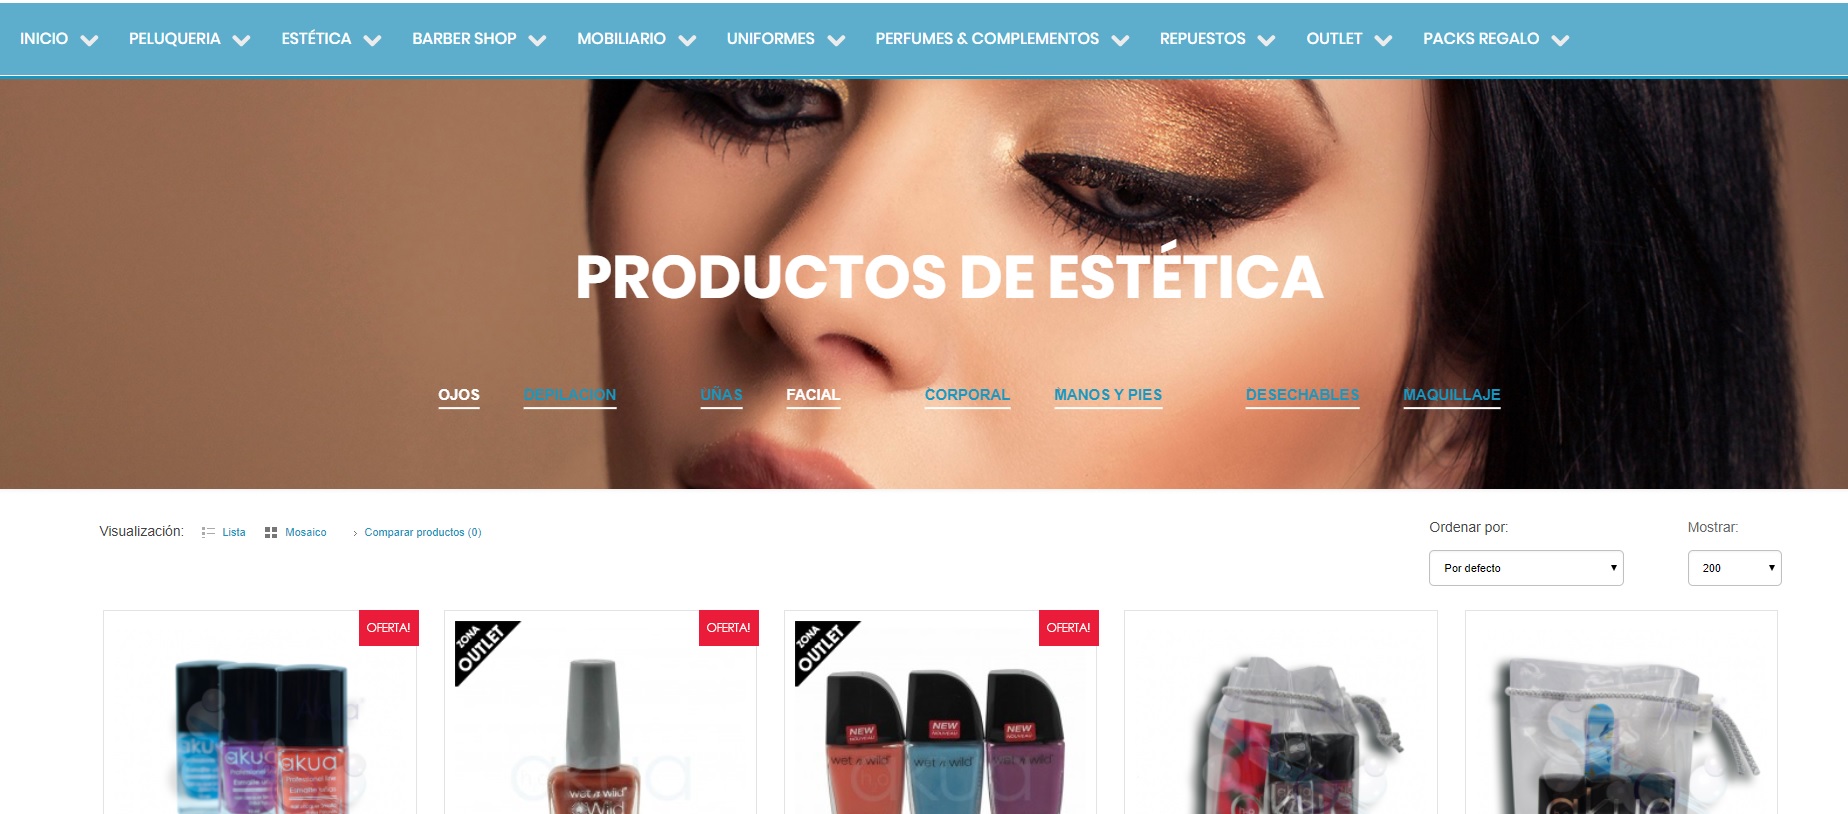 Tienda de Cosmetica Online